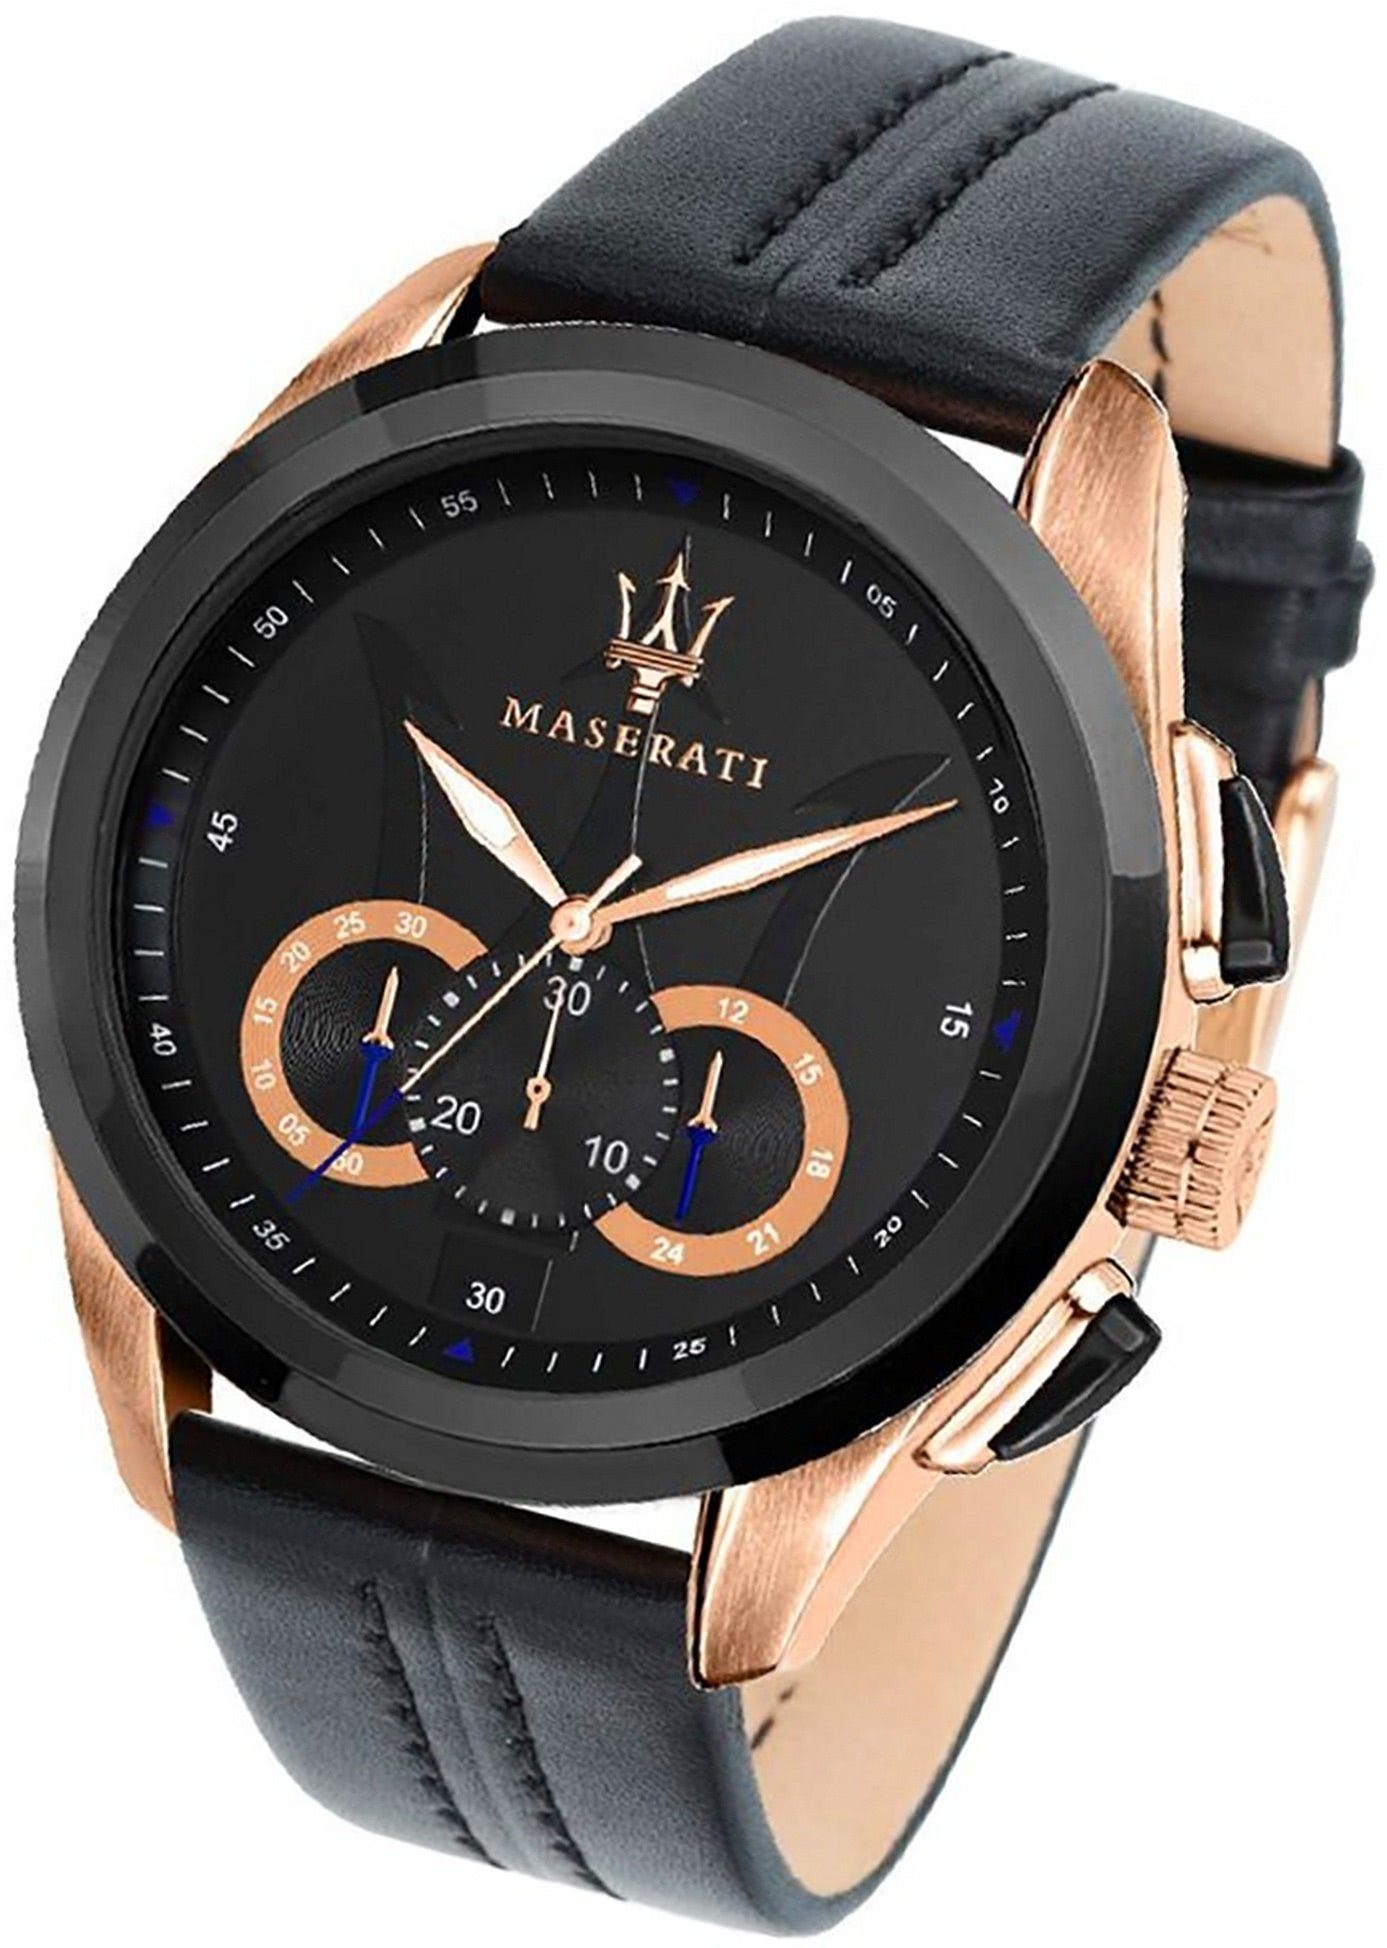 MASERATI Chronograph (ca. schwarz Maserati Leder Lederarmband, 55x45mm) rundes Gehäuse, groß Herrenuhr Armband-Uhr